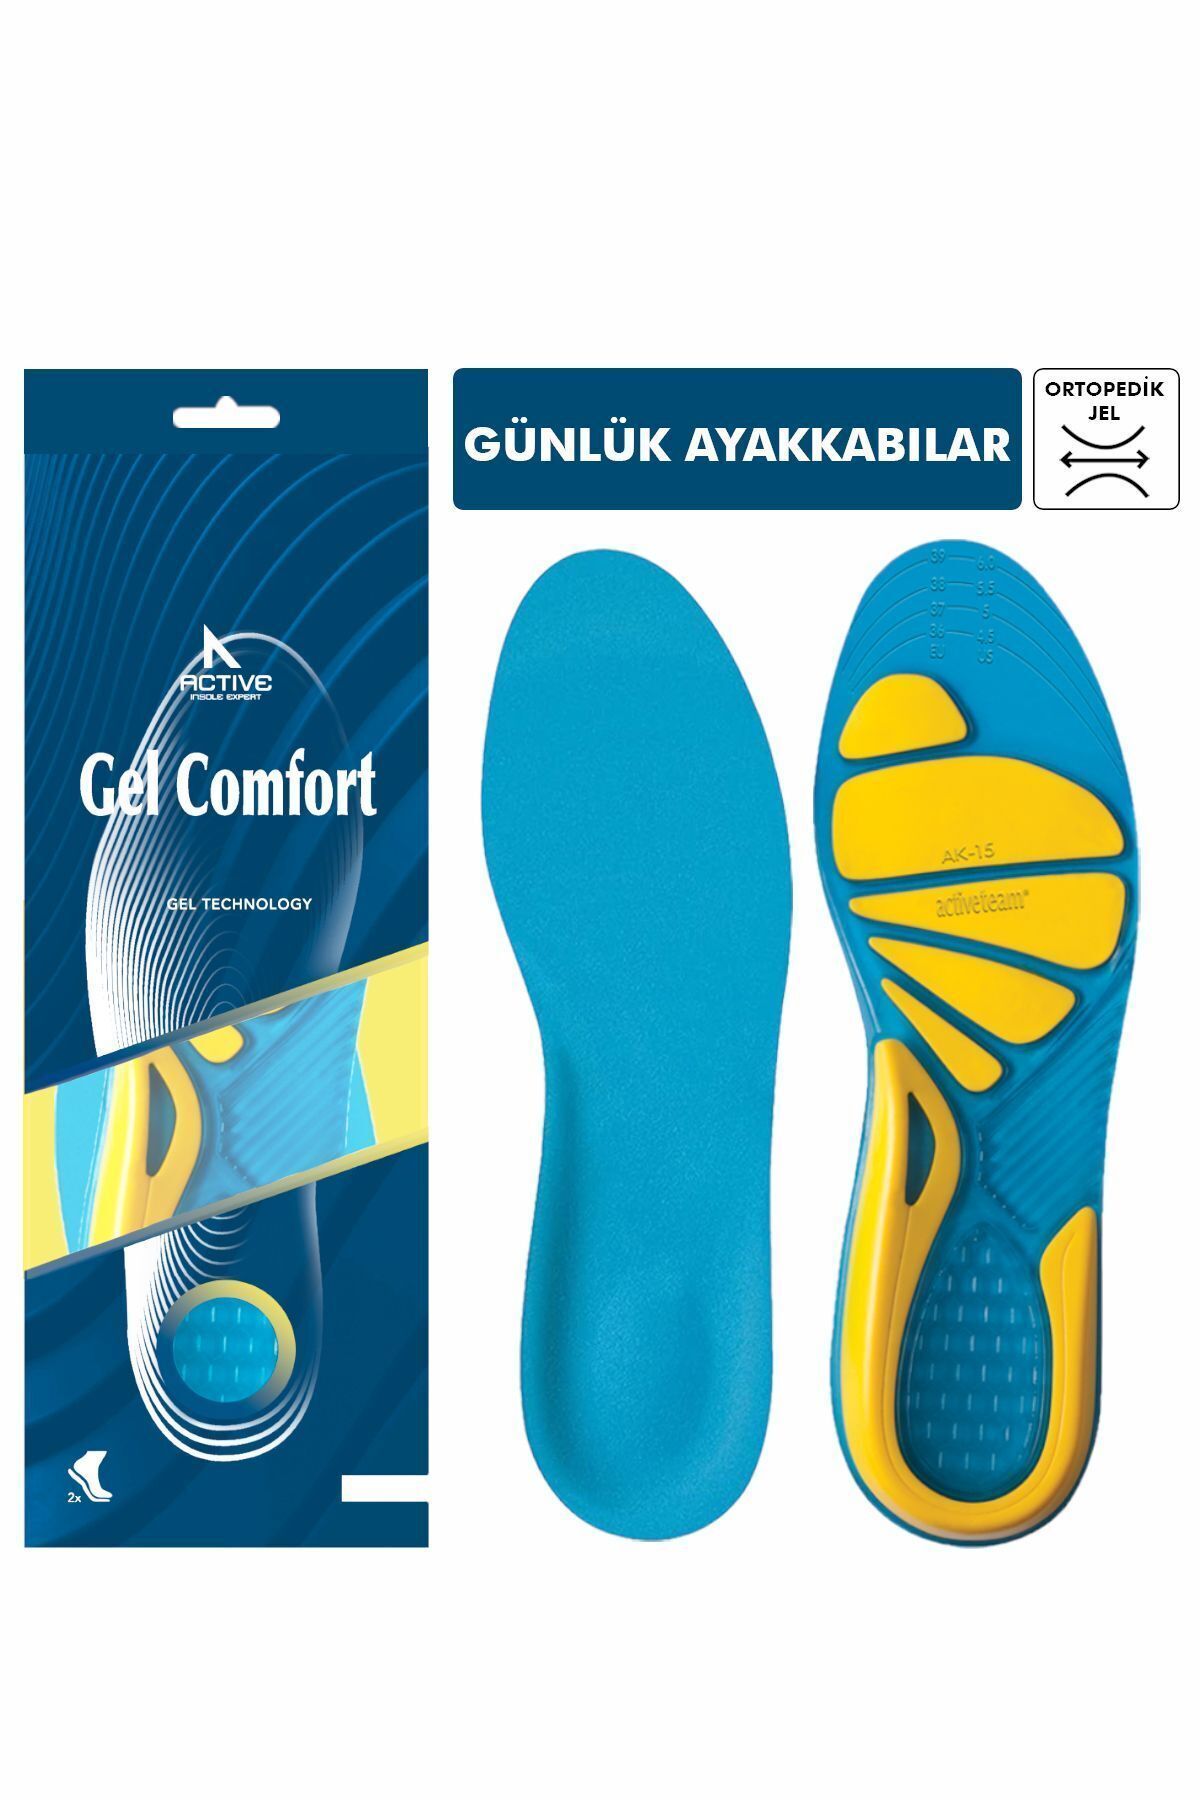 Gel Comfort Günlük Ayakkabılar Için, Kemer Ve Metatarsal Destekli,topuk Dikeni Giderici Ortopedik, Jel Tabanlık